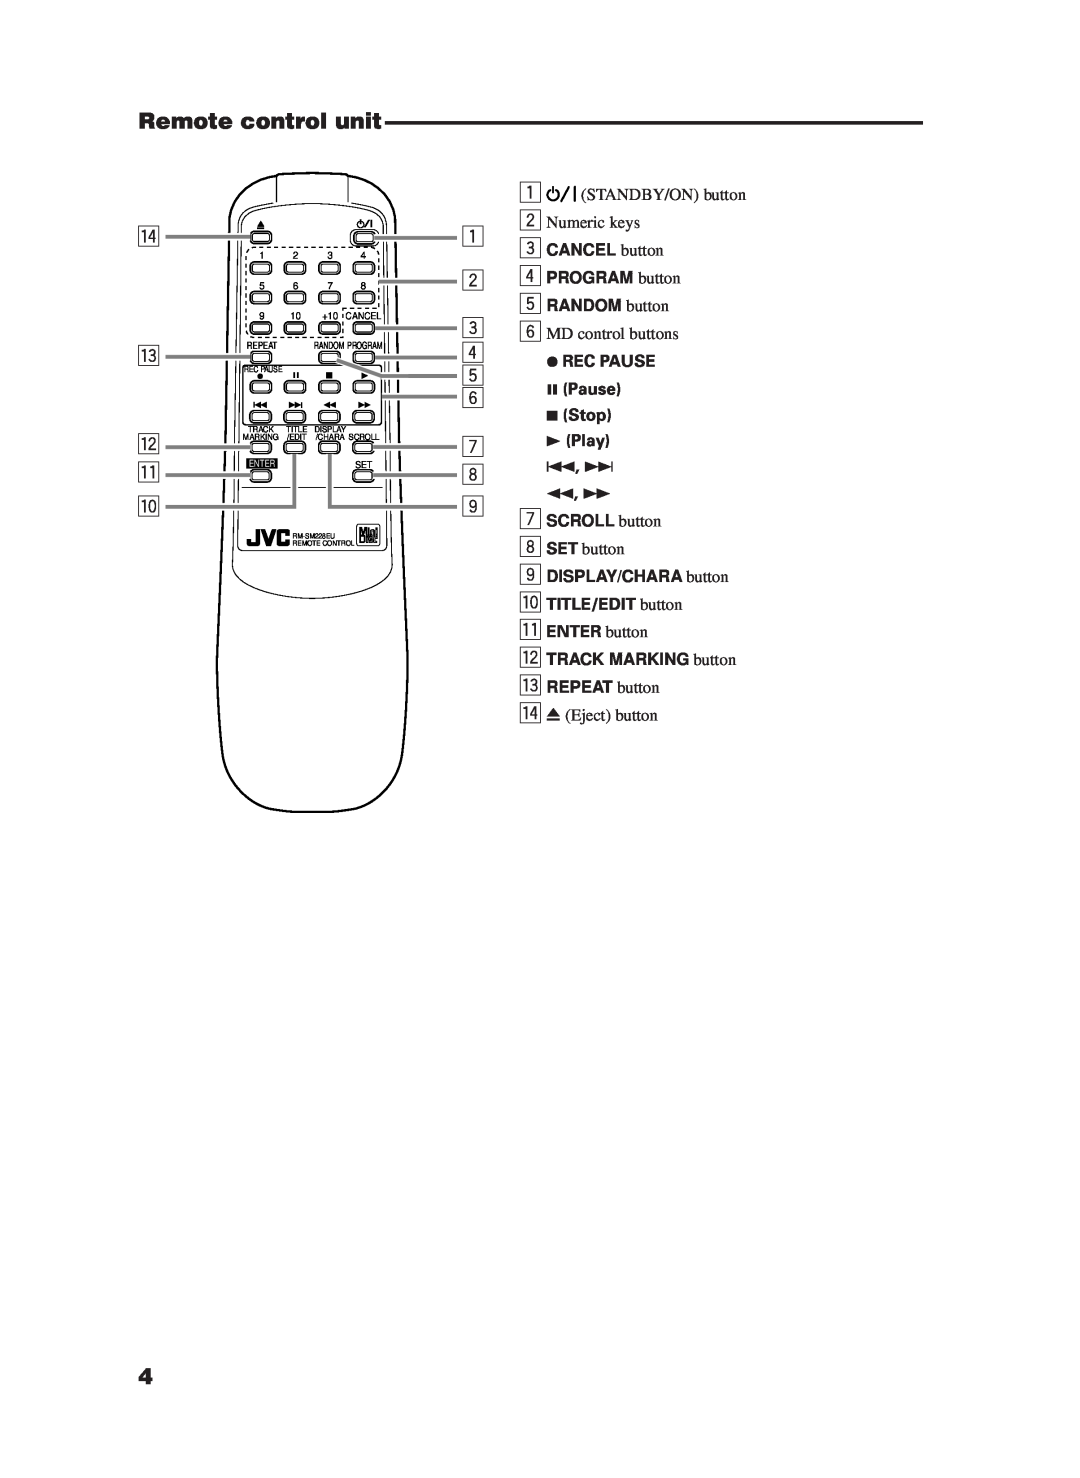 JVC XM-228BK manual Remote control unit, r e w q p, CANCEL button, PROGRAM button 5 RANDOM button, Rec Pause, Stop 73 Play 